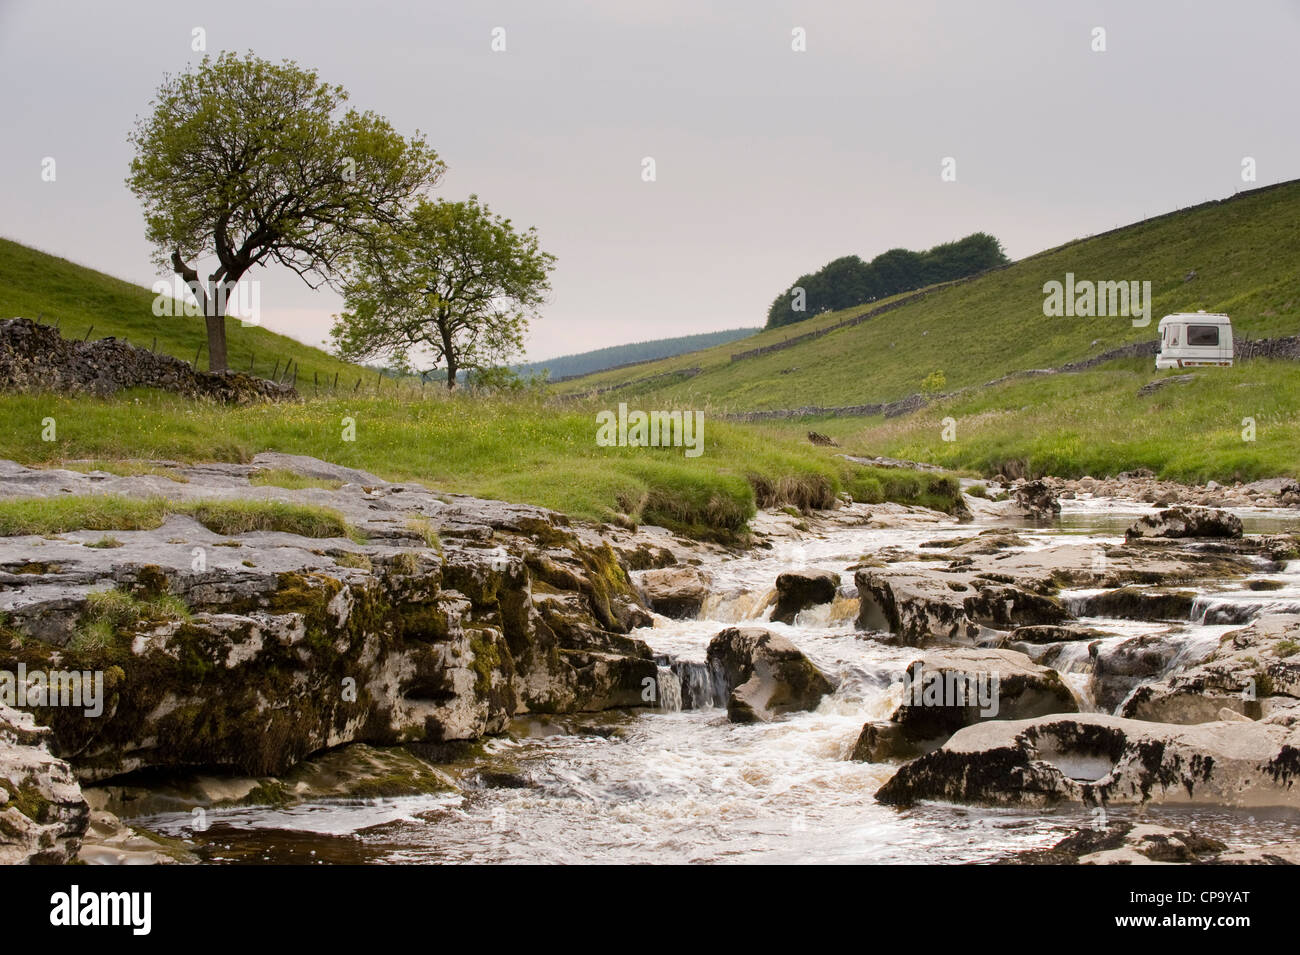 Locations rivière Wharfe, en passant par emplacement calme et pittoresque vallée étroite, en cascade sur les rochers calcaires - Langstrothdale, Yorkshire, Angleterre, Royaume-Uni. Banque D'Images